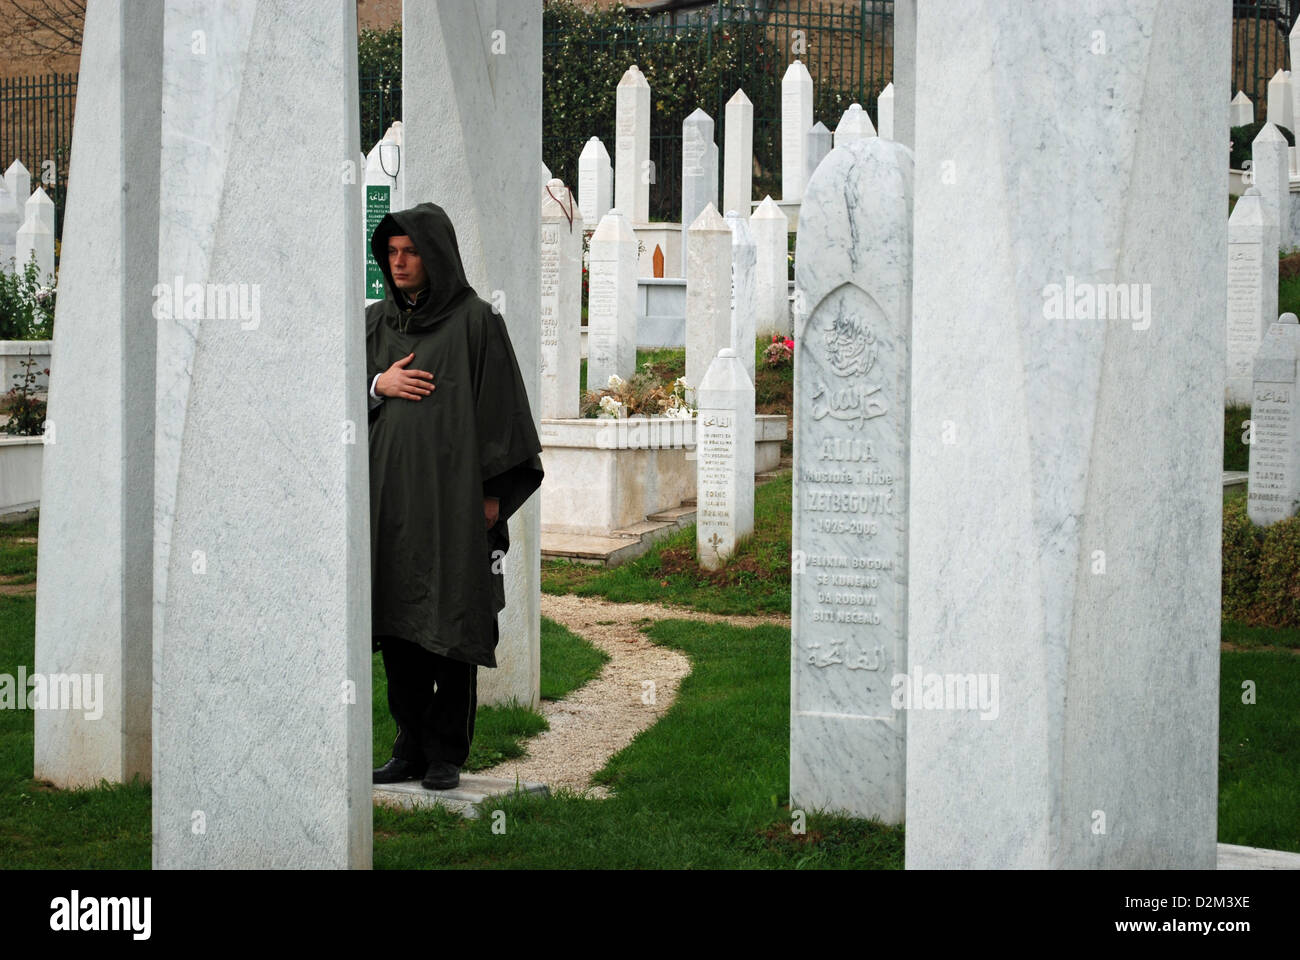 La tombe de l'ancien Président Bosniaque Alija Izetbegović gardée par un soldat. La tombe a été endommagé par une bombe en 2006. Banque D'Images